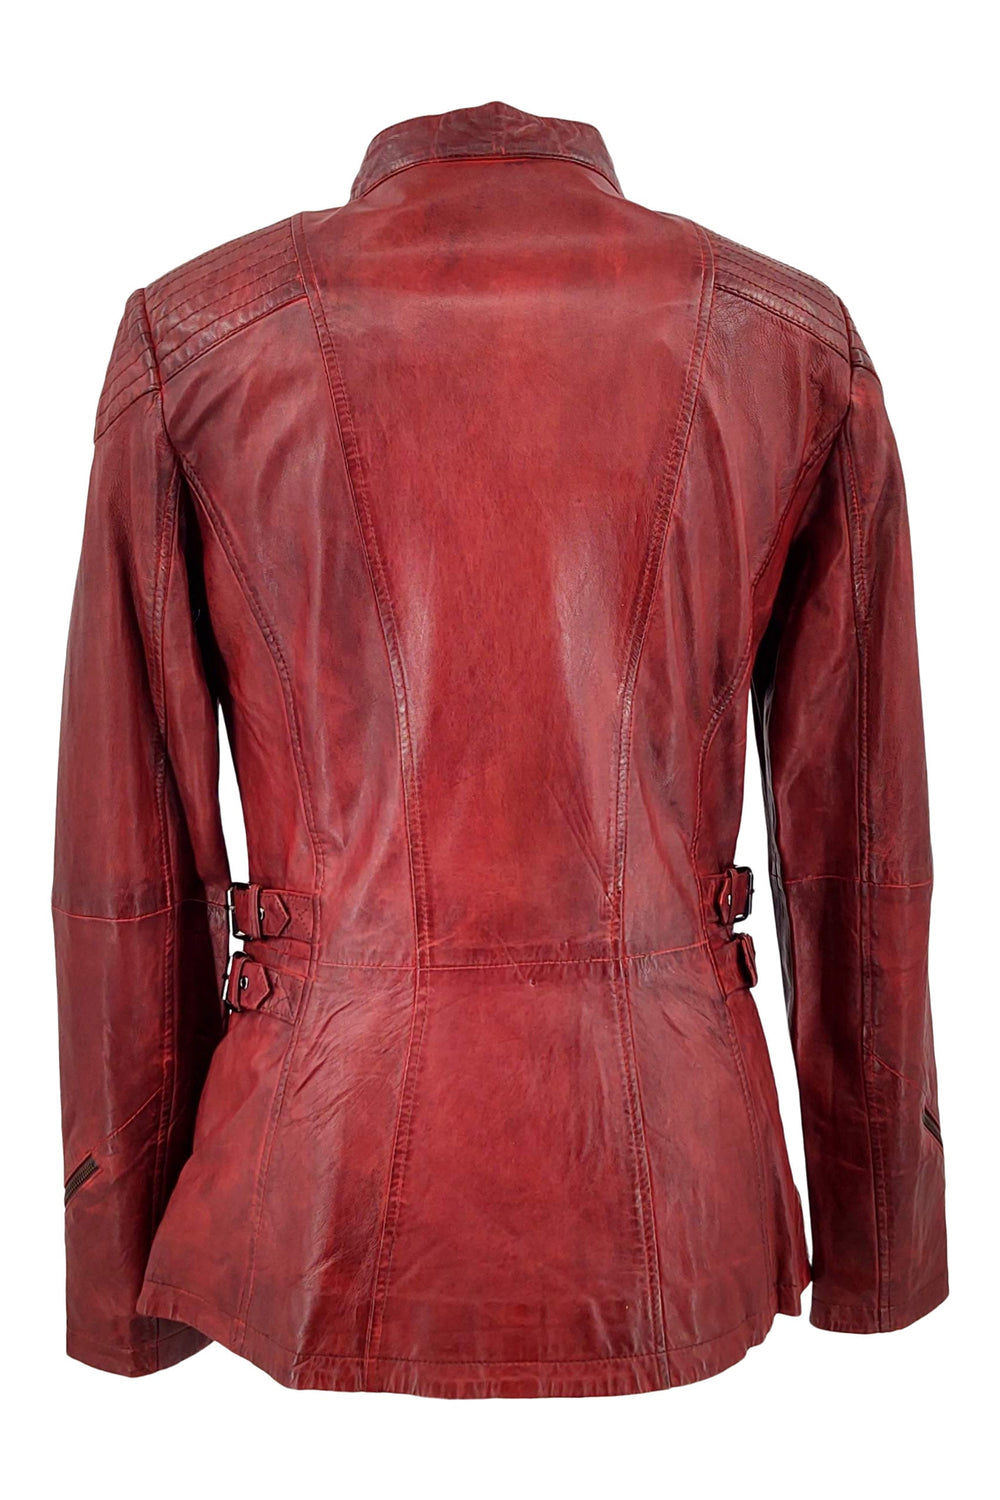 Floyd - Lamb Copper Leather - Women - Red / Læder Skinds Jakke - Levinsky - Kvinde | STAMPE PELS